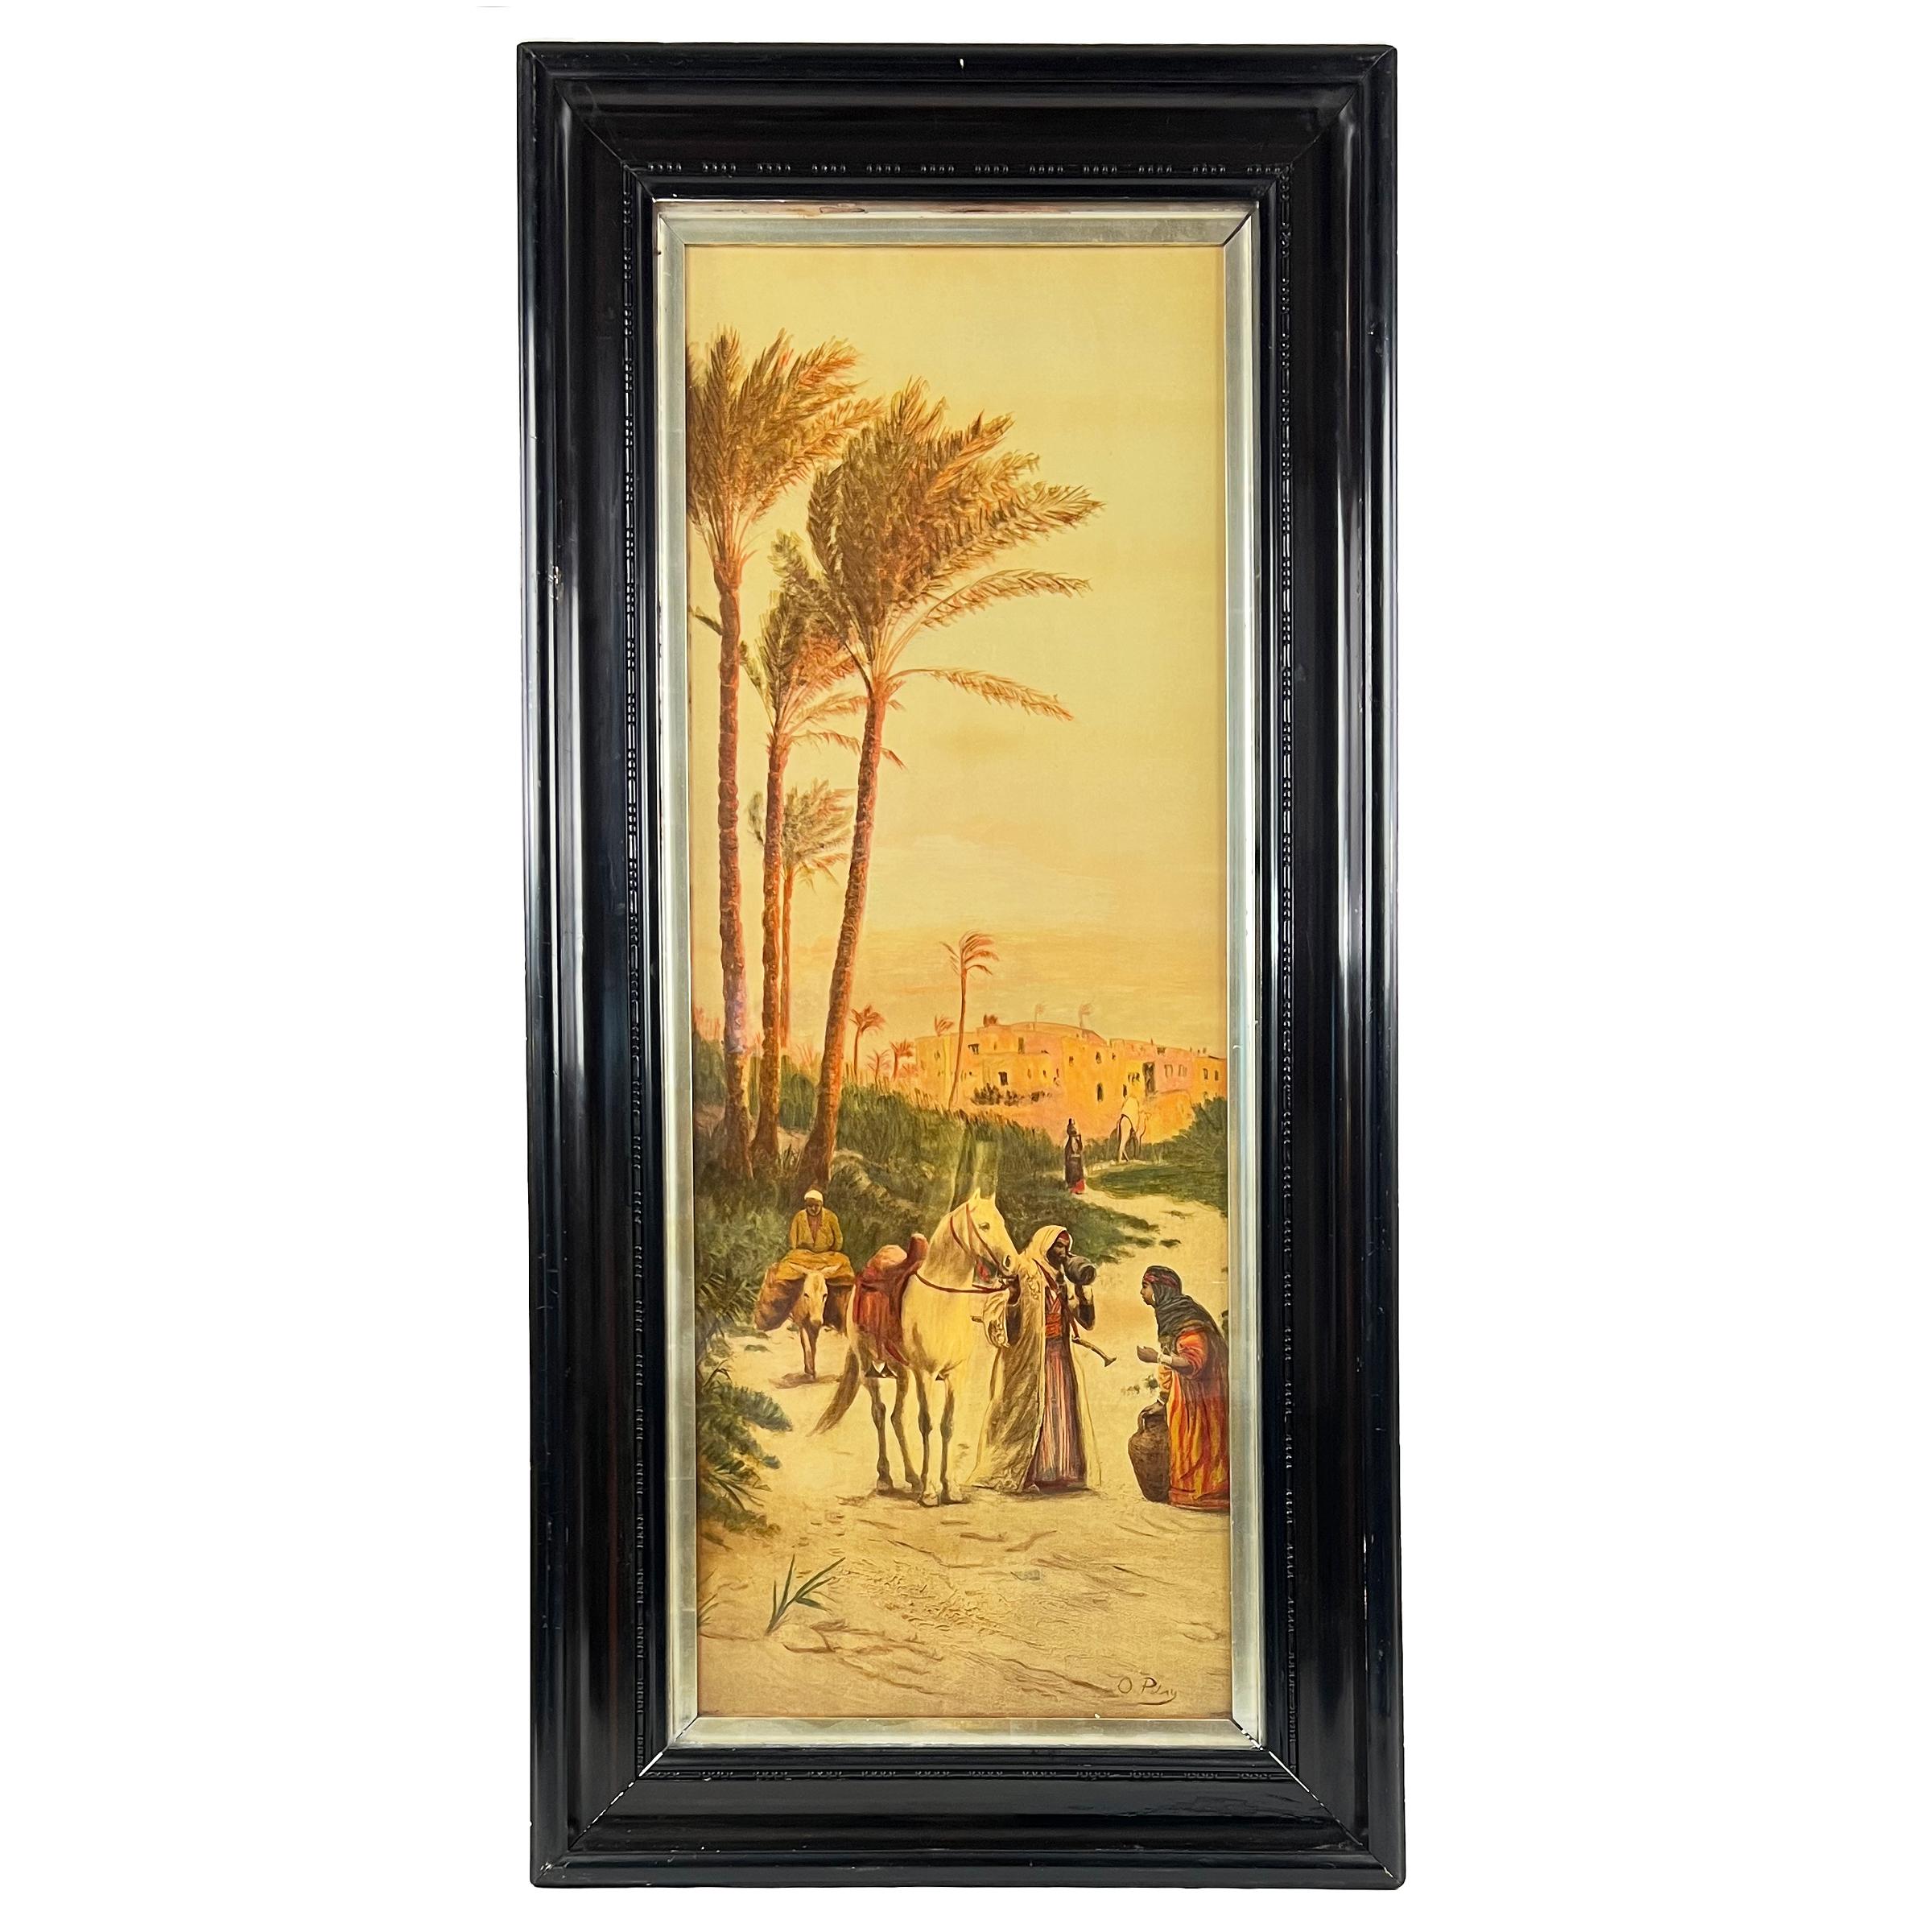 Die ersten beiden zeigen Straßenszenen in Kairo und die anderen beiden Wüstenszenen, signiert unten rechts. 

Otto Pilny (1866 - 1936) war ein Schweizer Maler, der sich auf orientalische Genreszenen spezialisiert hat.

Abmessungen: H: 122cm, B: